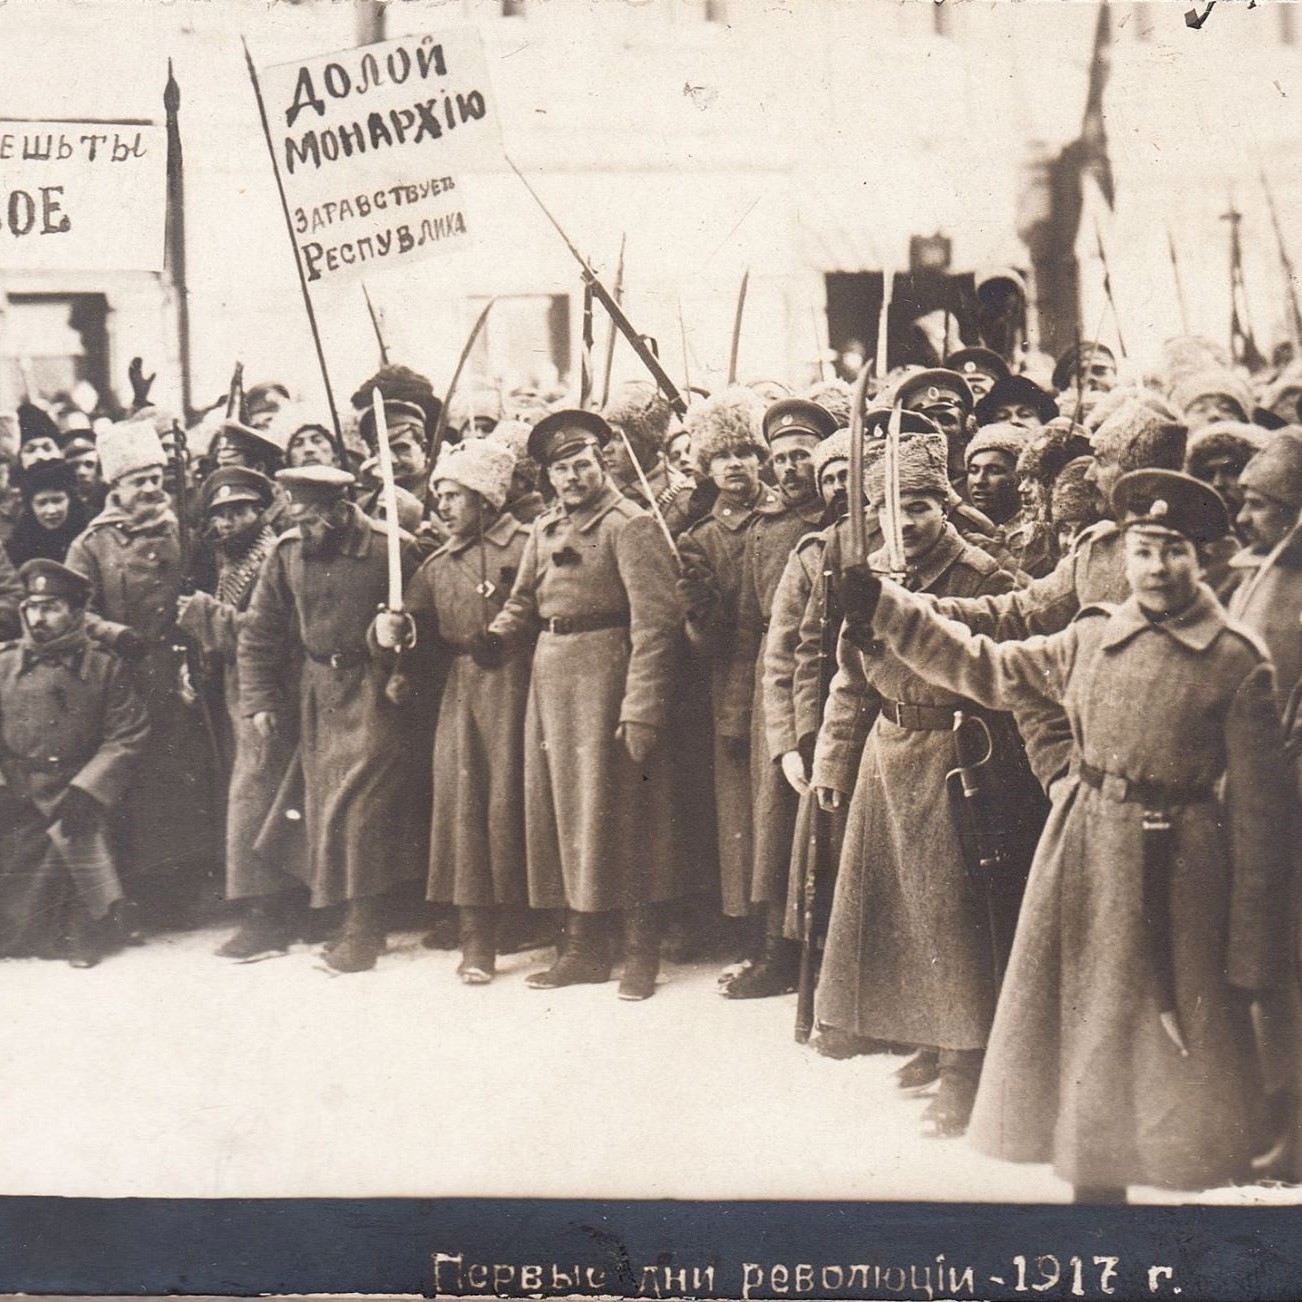 Февральская революция 1917